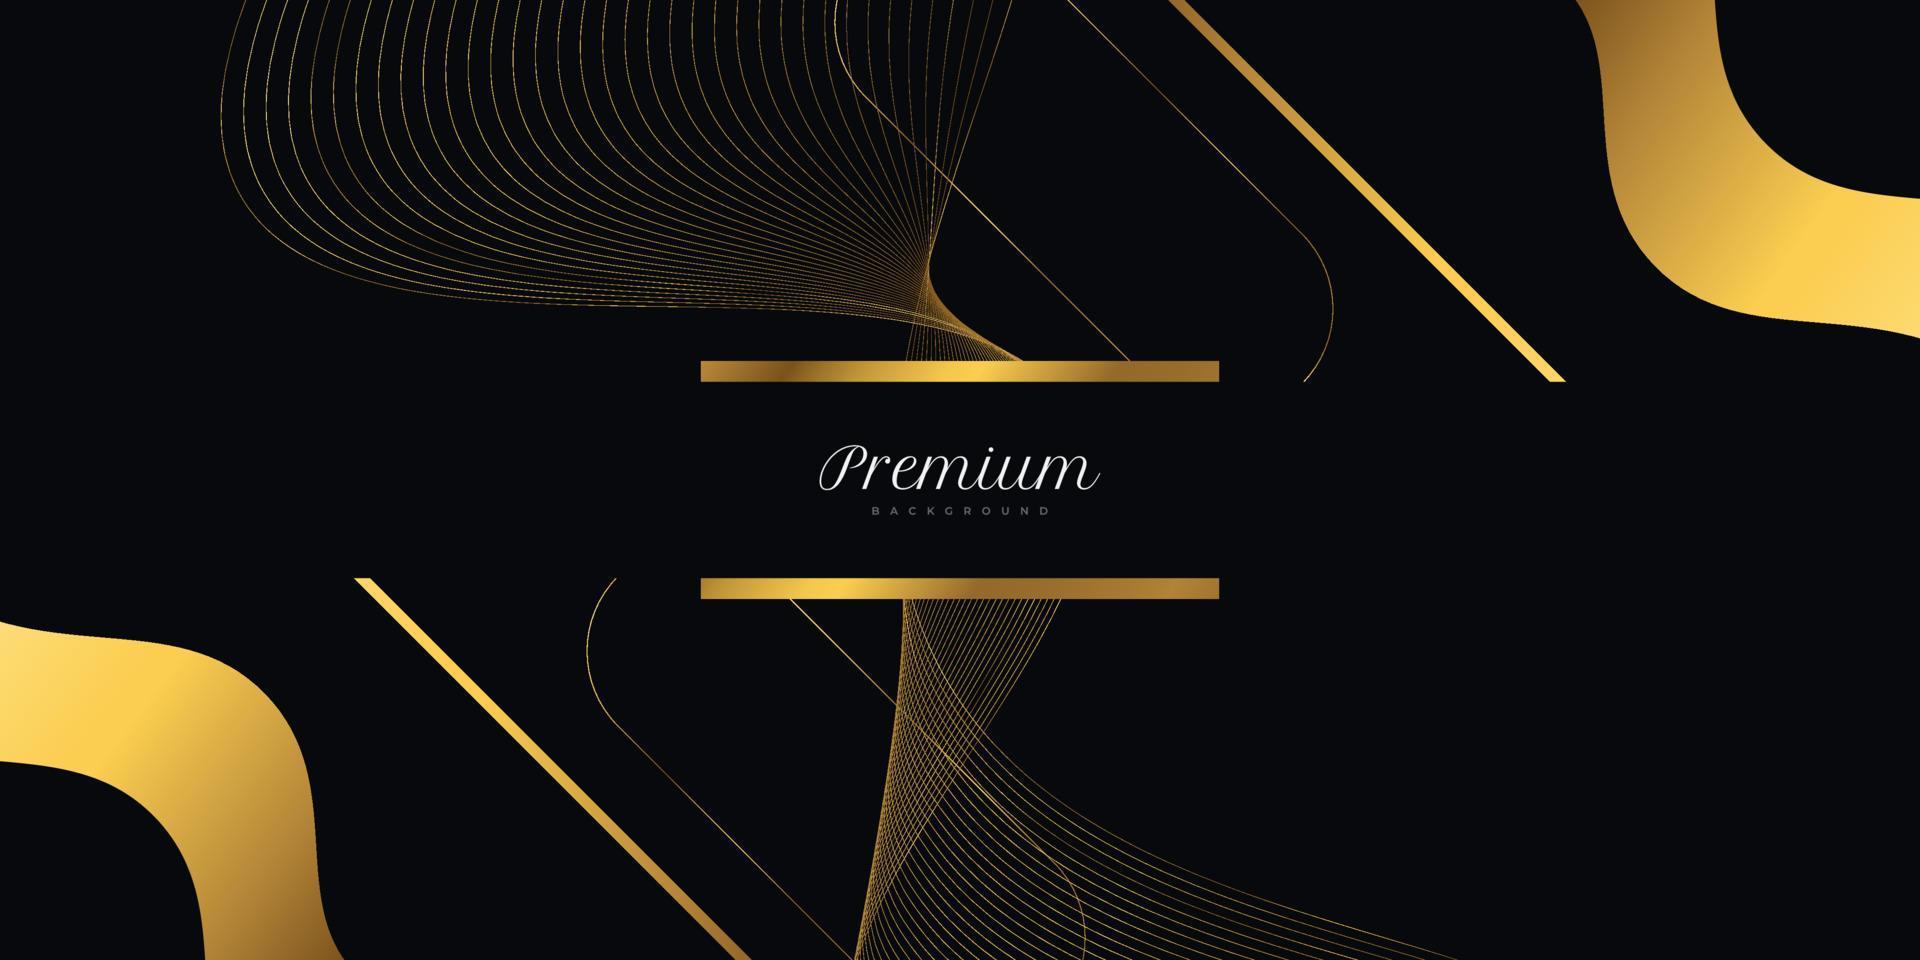 lyxig svart och guld bakgrund med vågiga guldlinjer. premium svart och guld bakgrund för pris, nominering, ceremoni, formell inbjudan eller certifikatdesign vektor